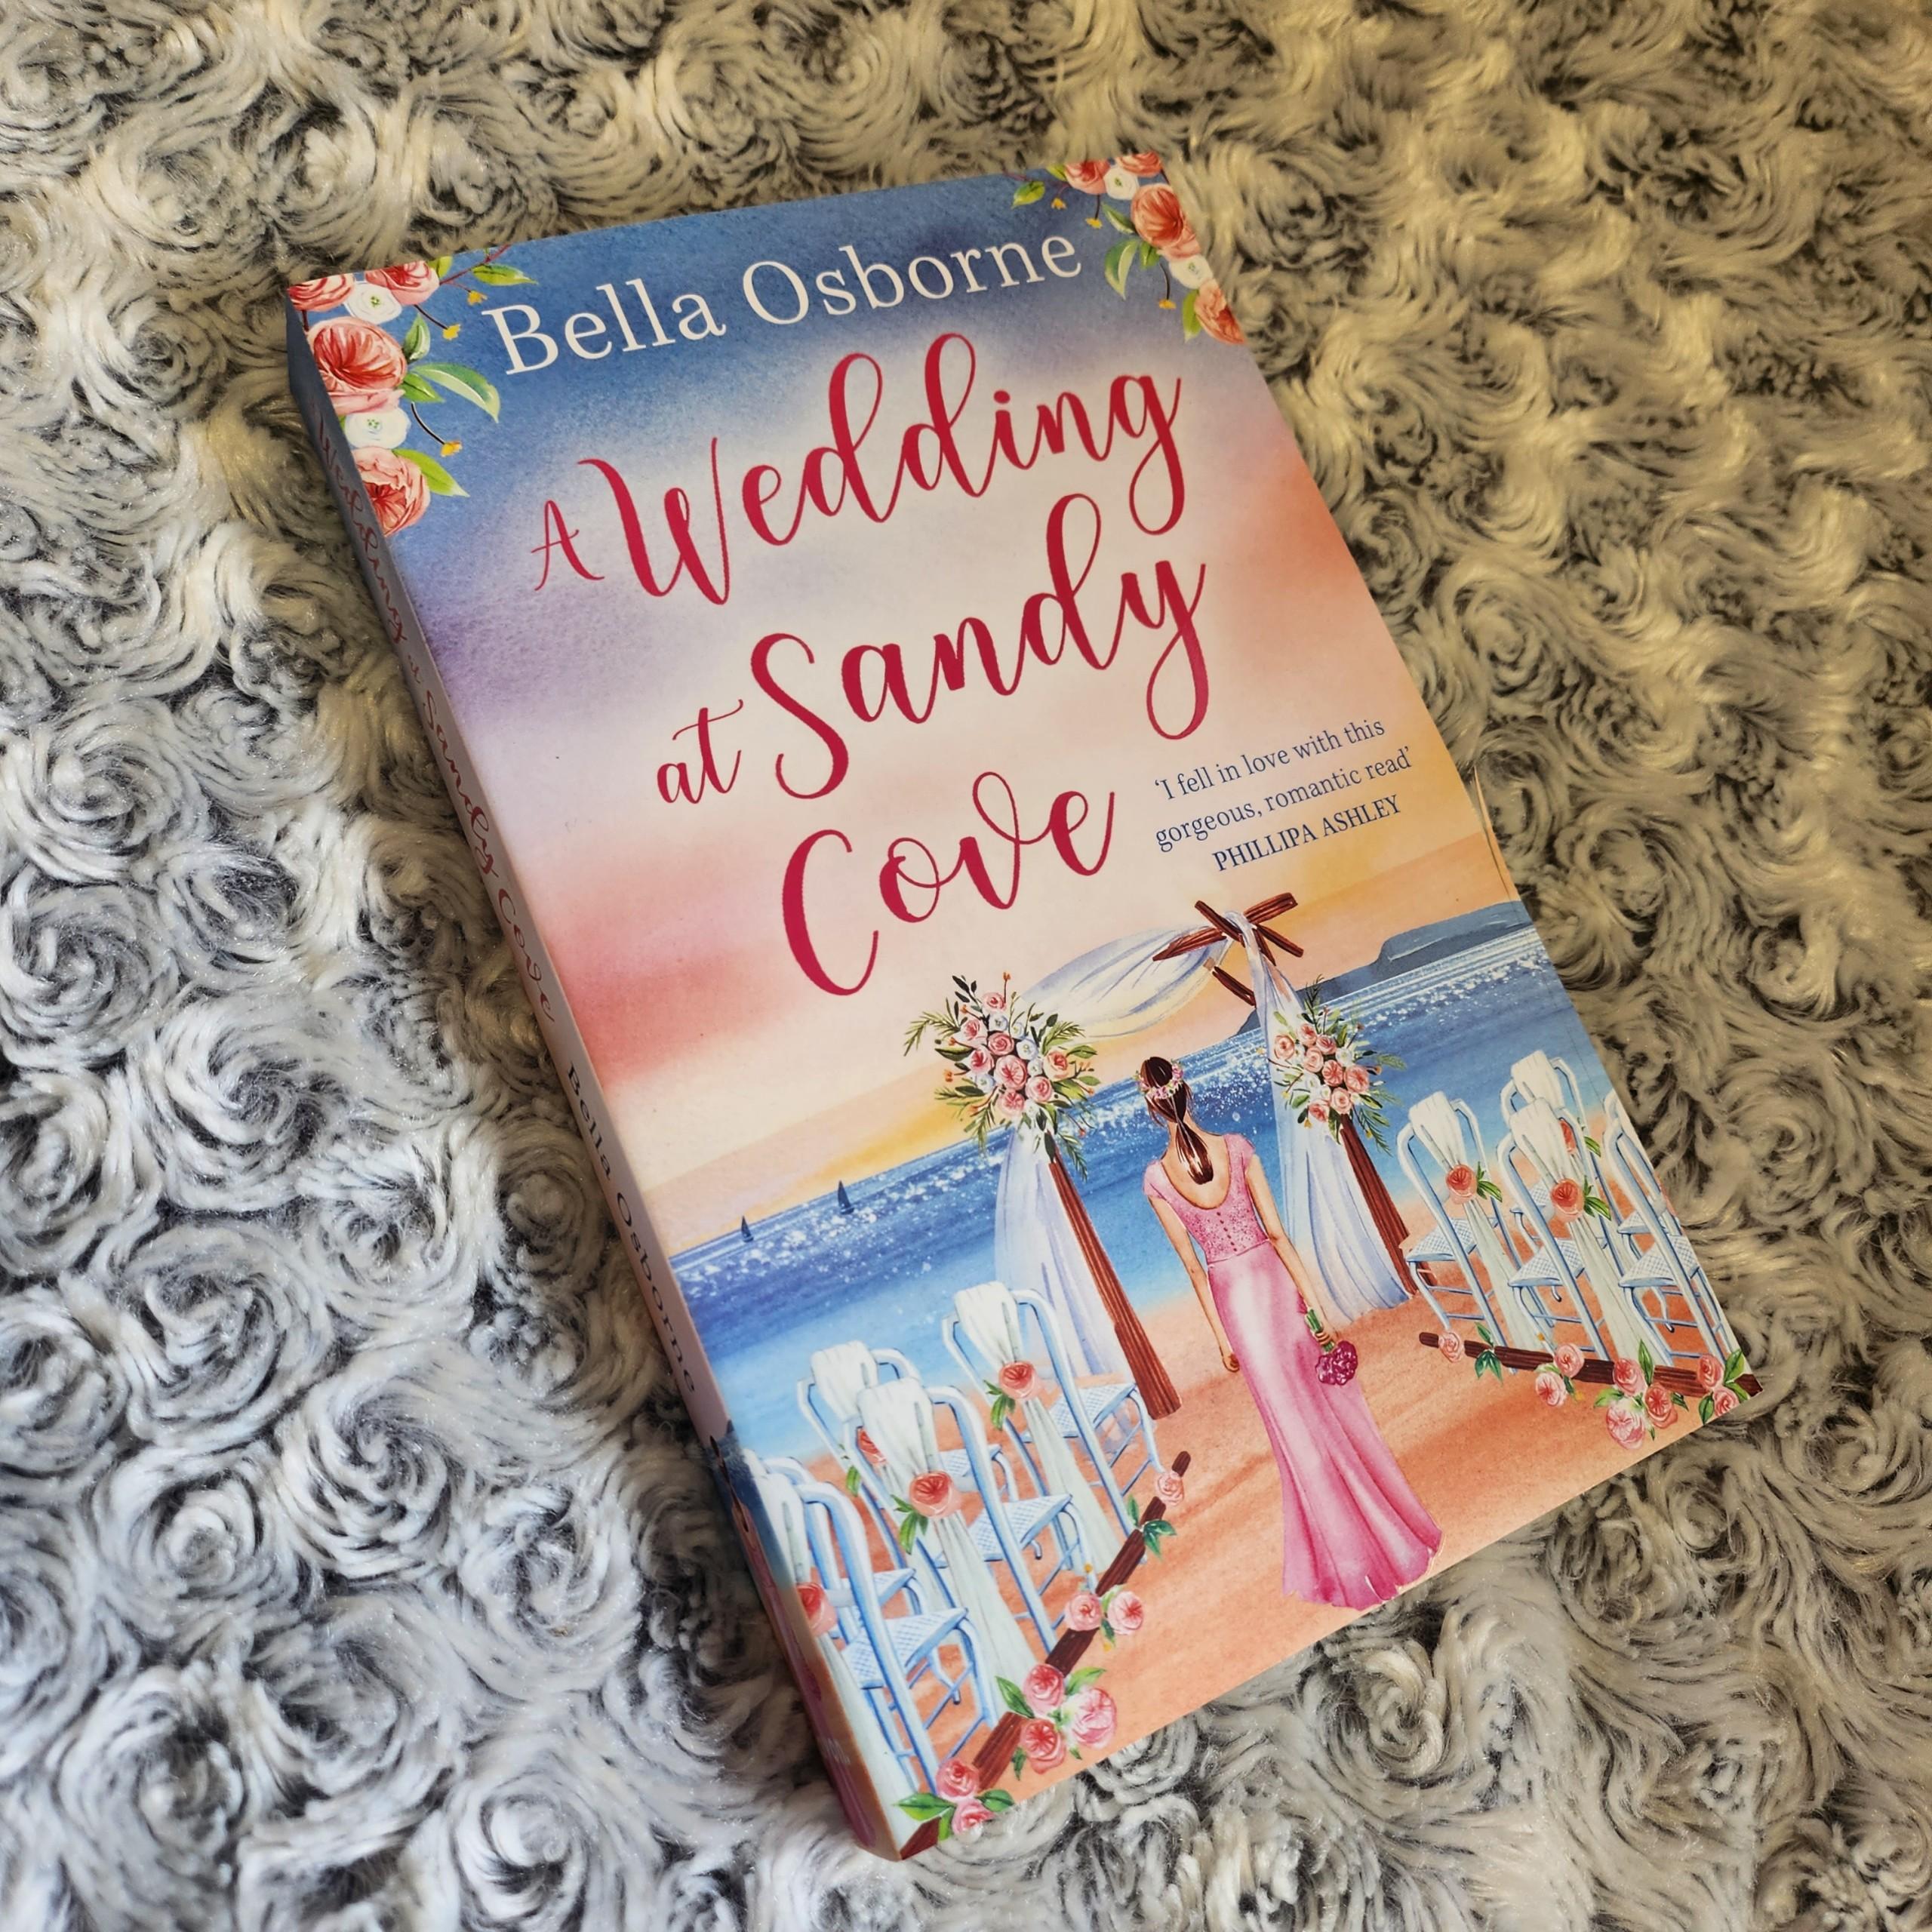 Tiểu thuyết lãng mạn tiếng Anh: A Wedding at Sandy Cove